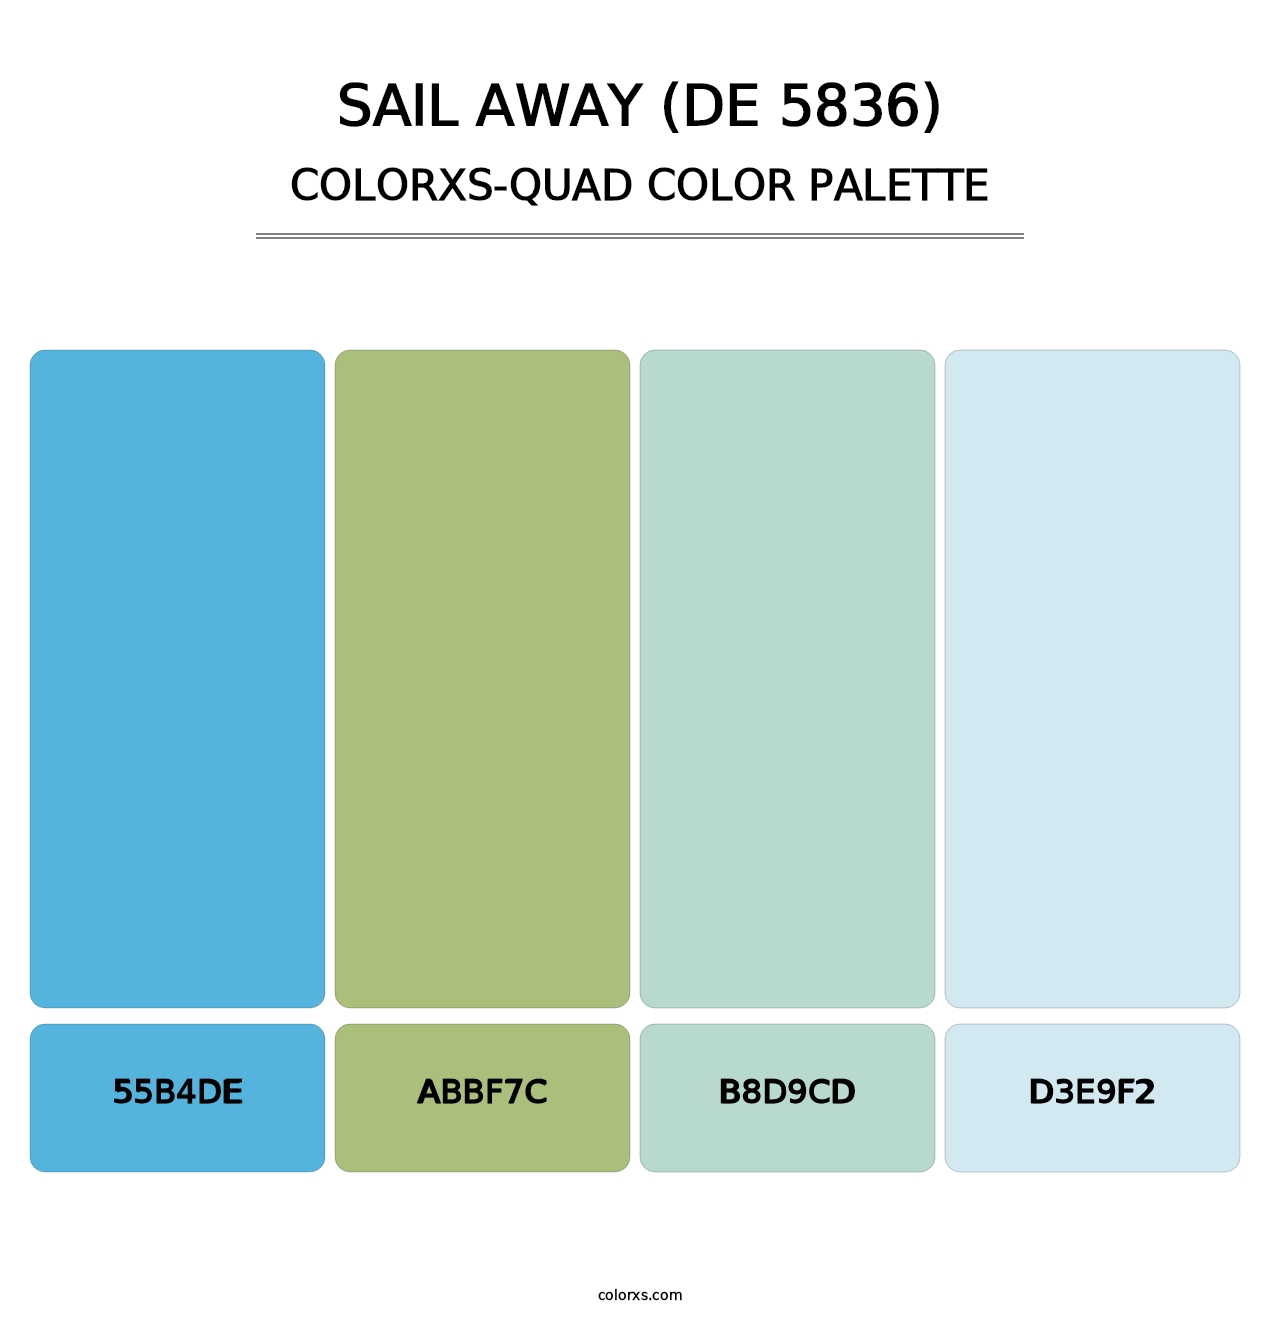 Sail Away (DE 5836) - Colorxs Quad Palette